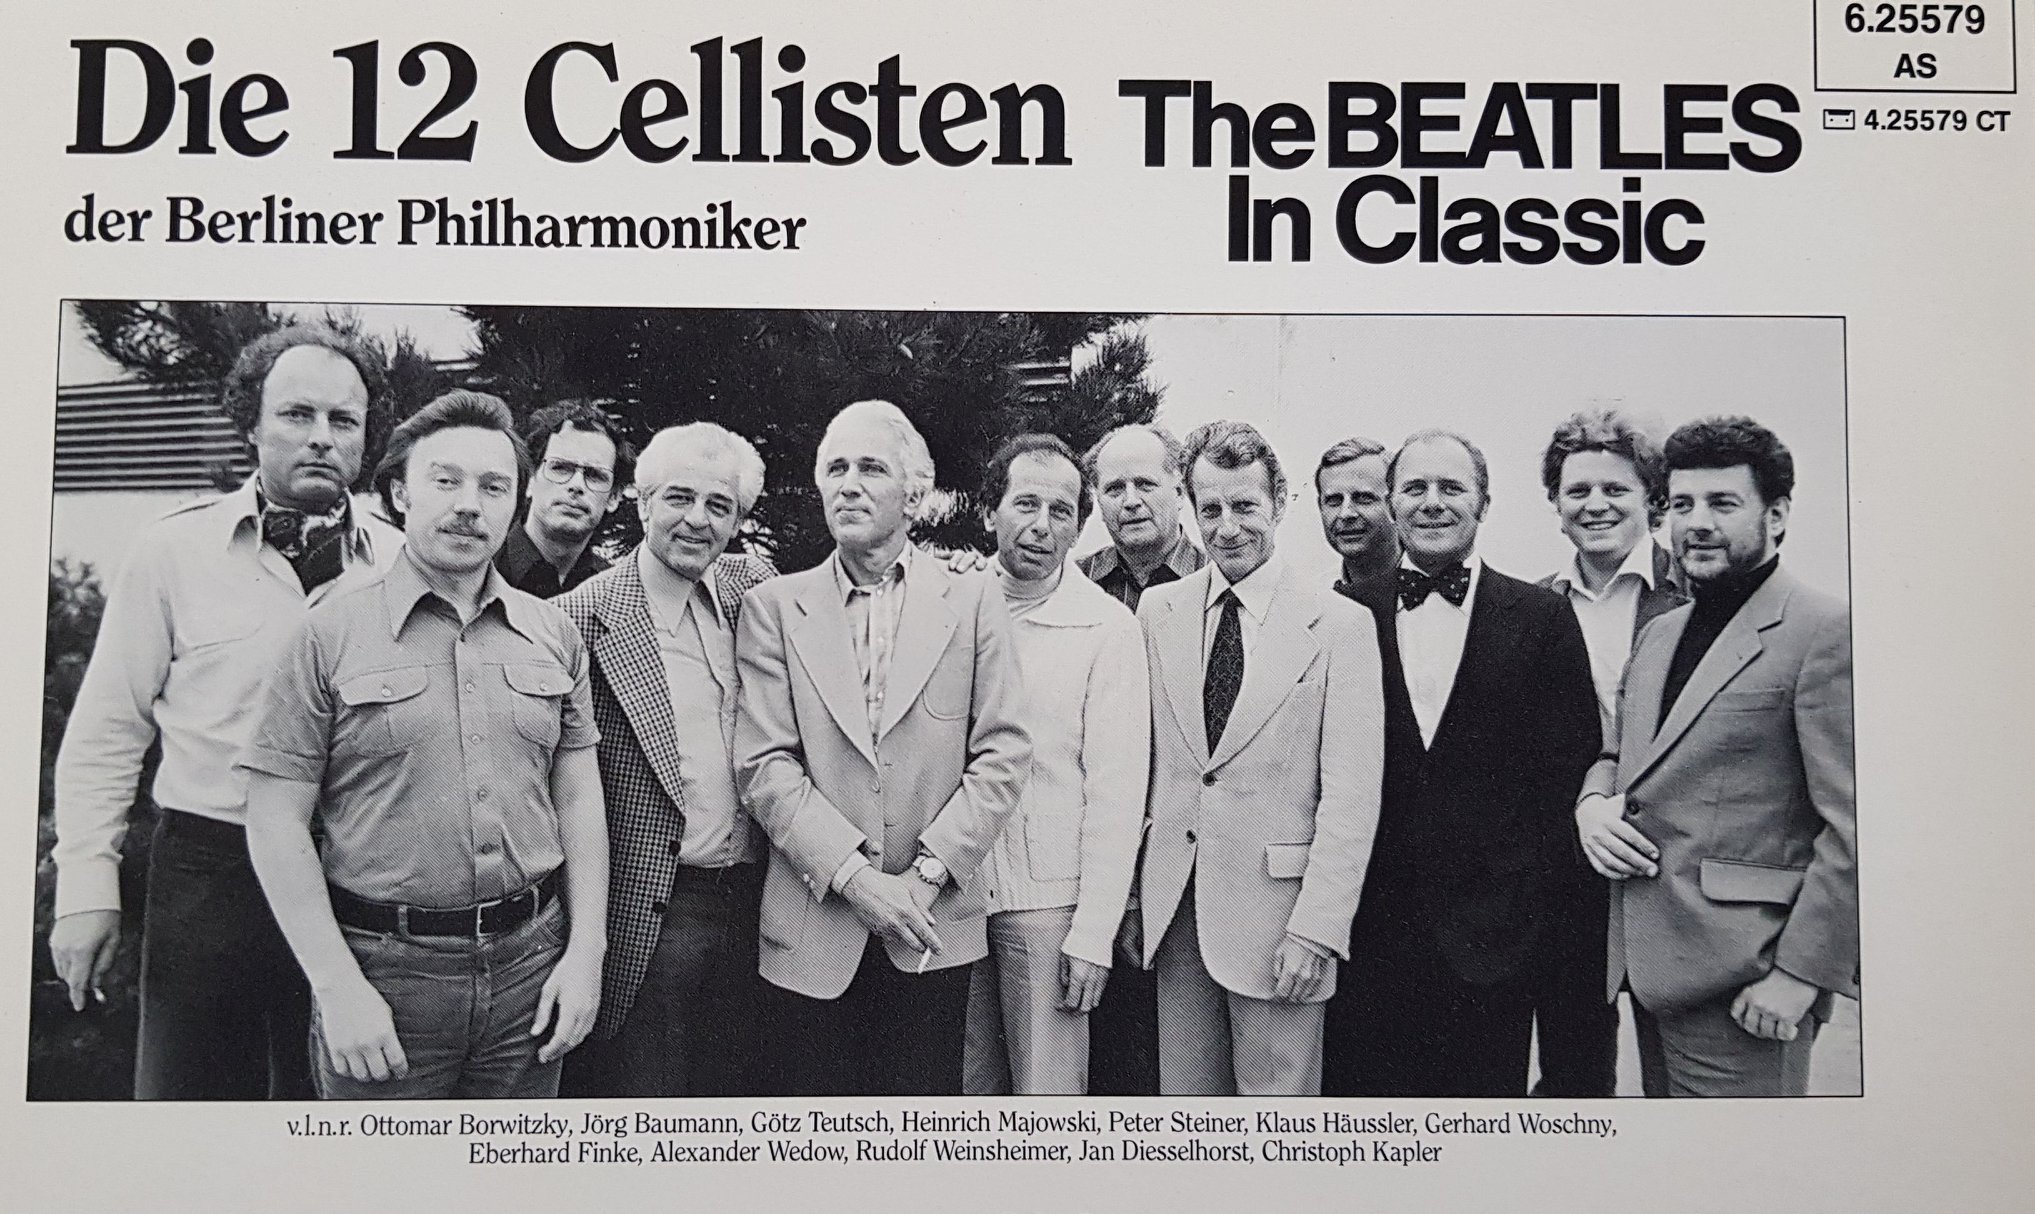 Zwlf Cellisten.jpg